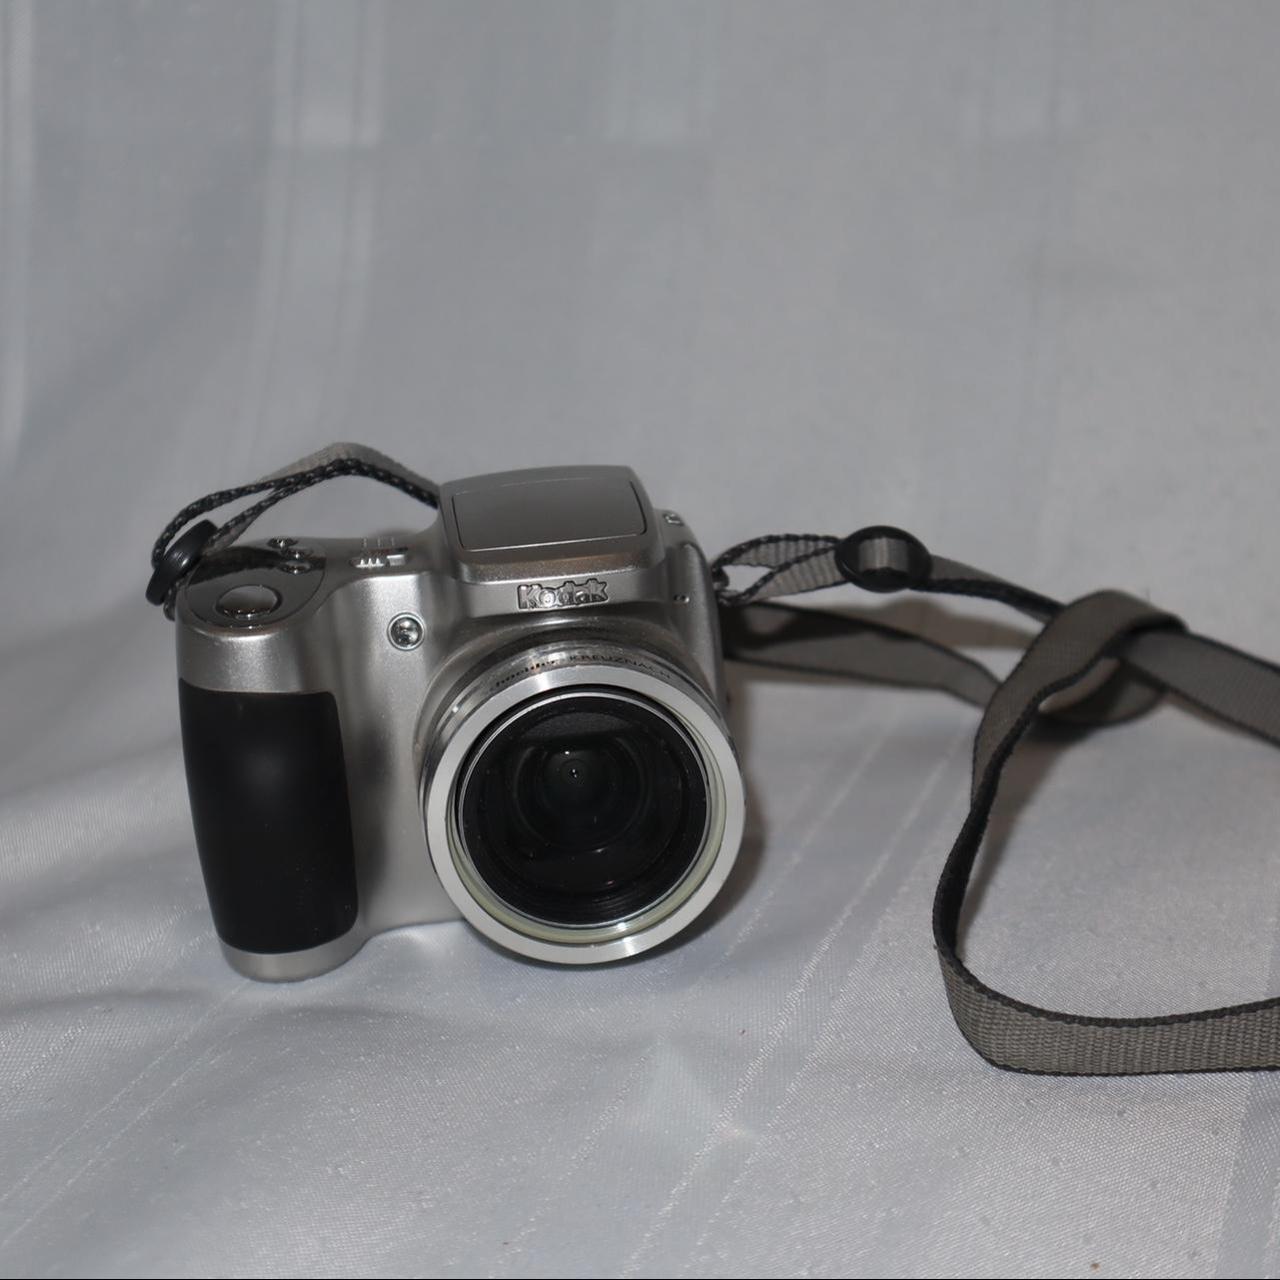 Product Image 1 - Kodak EasyShare Z710 Camera
-10x Optical